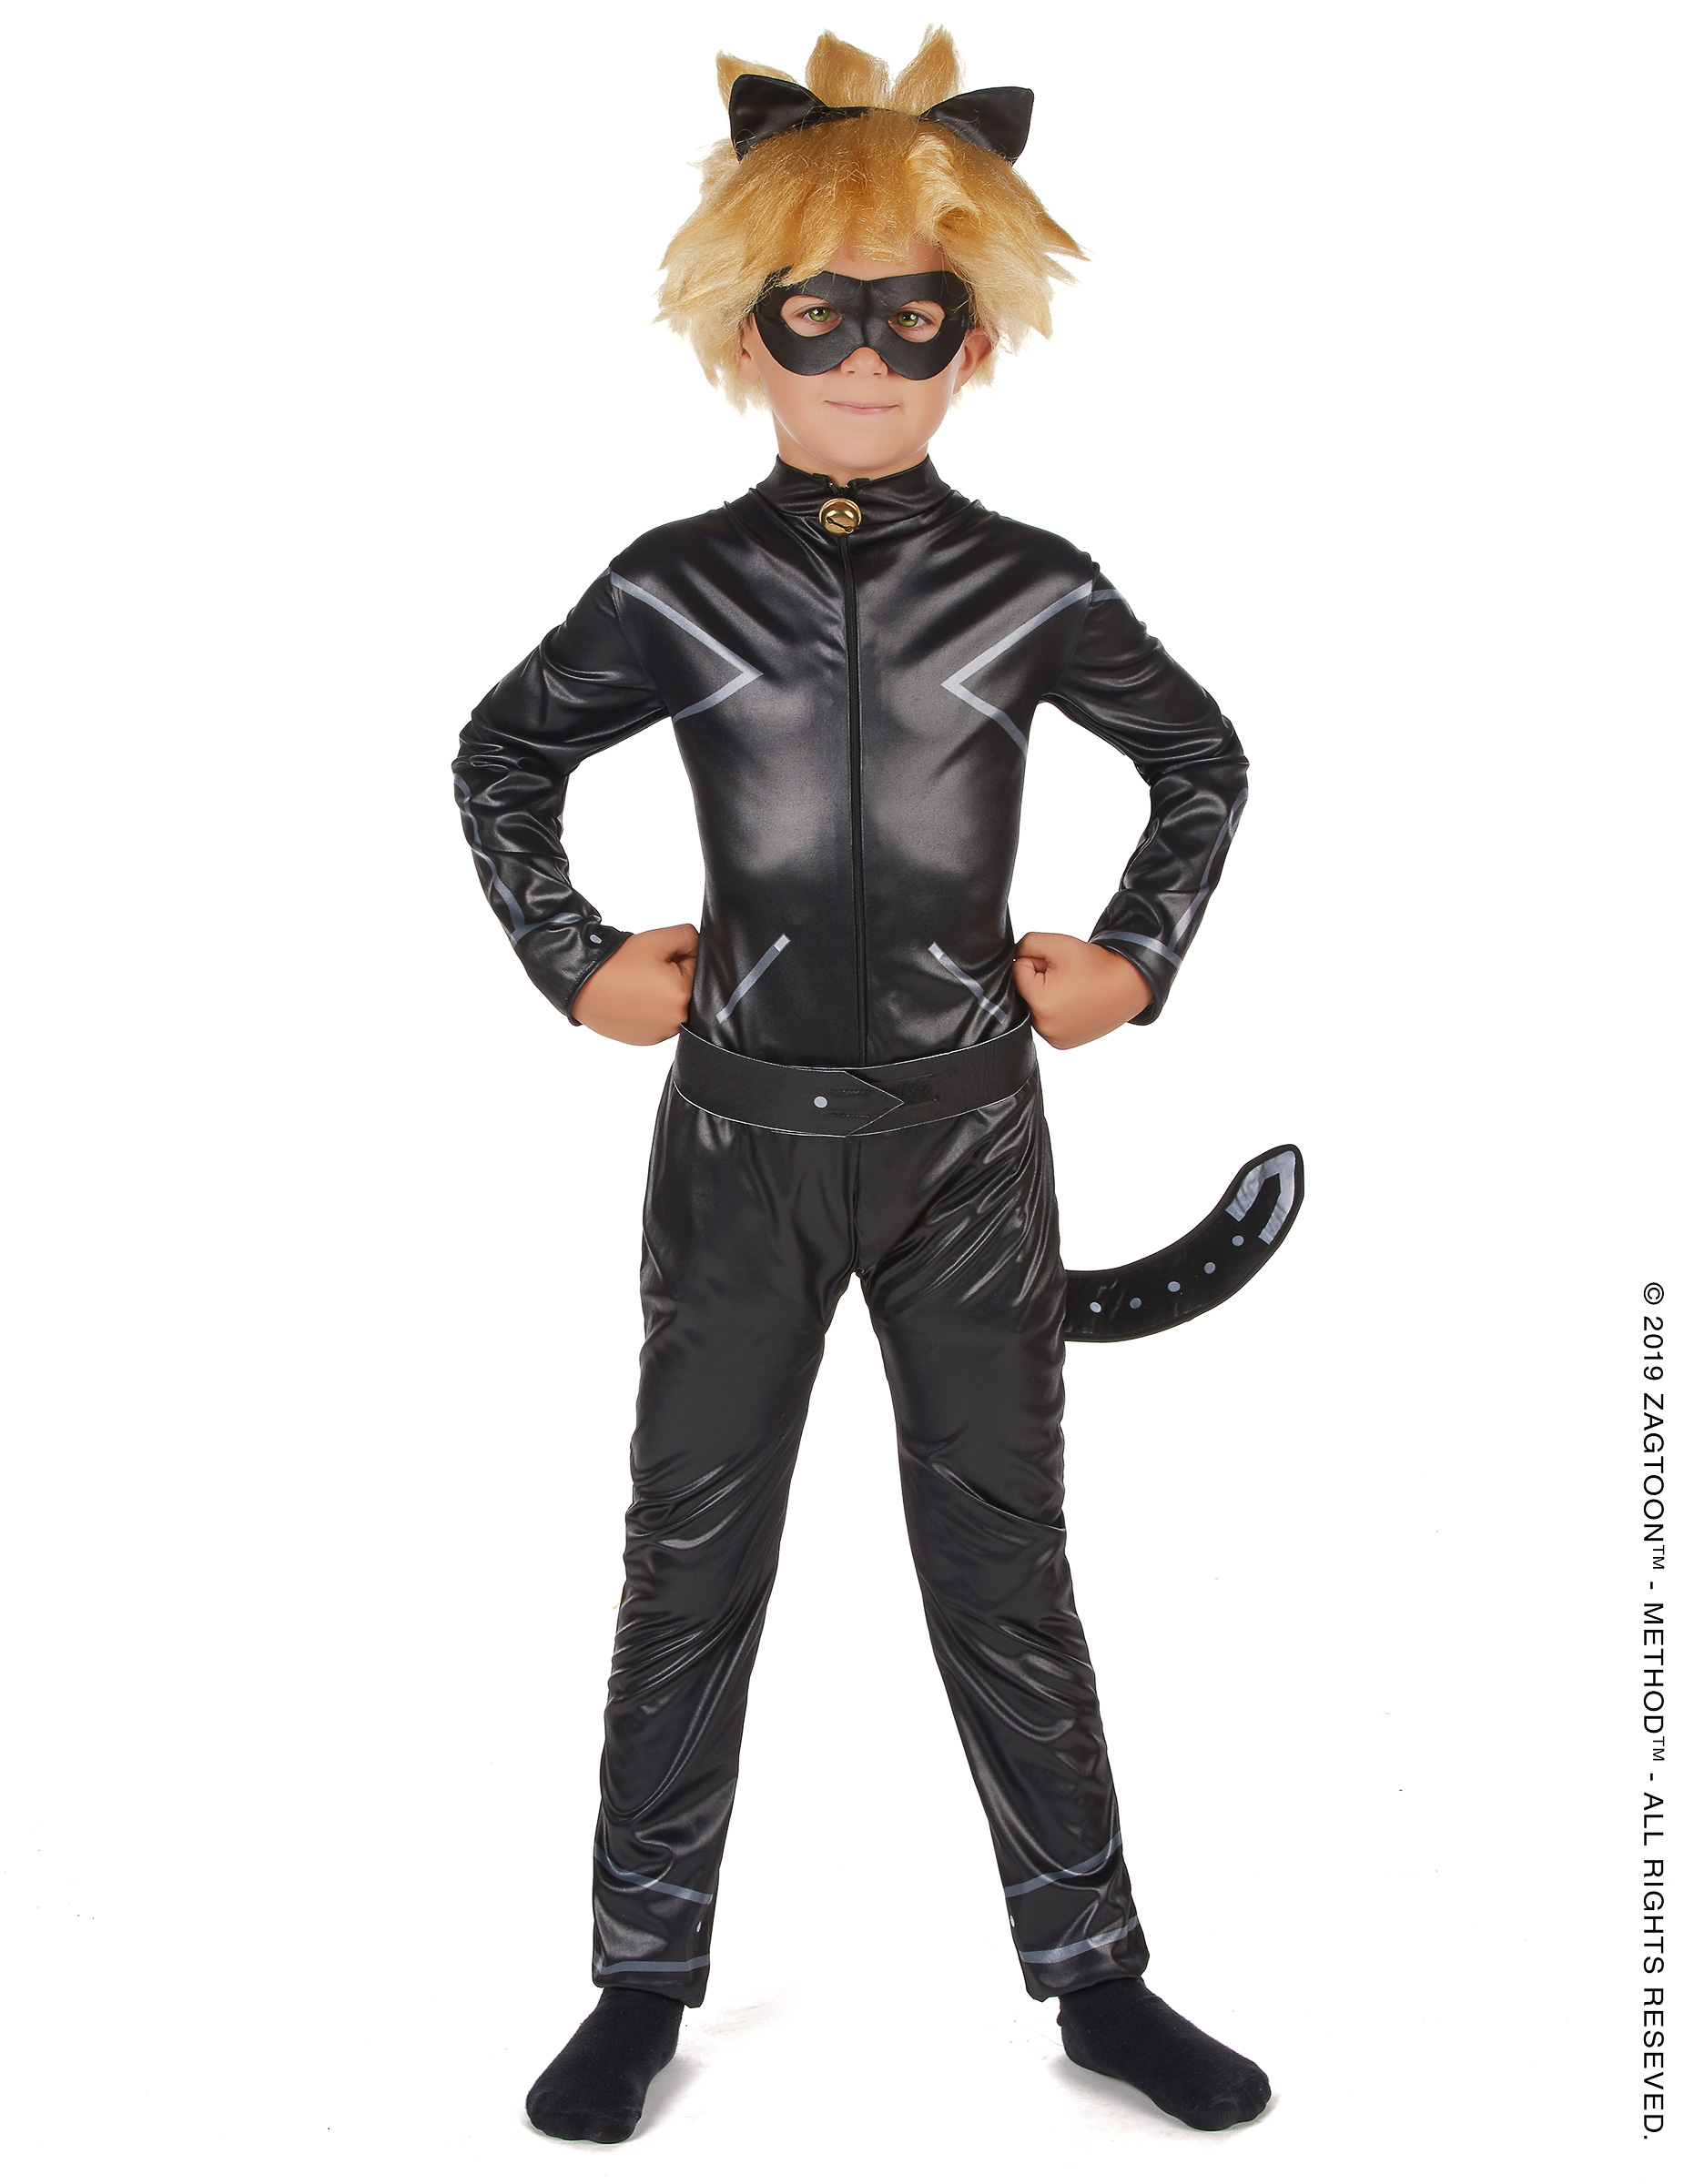 Deguisement Miraculous Chat Noir Garcon Deguisements Cadeaux Pas Chers Boutique Arlequin Suisse